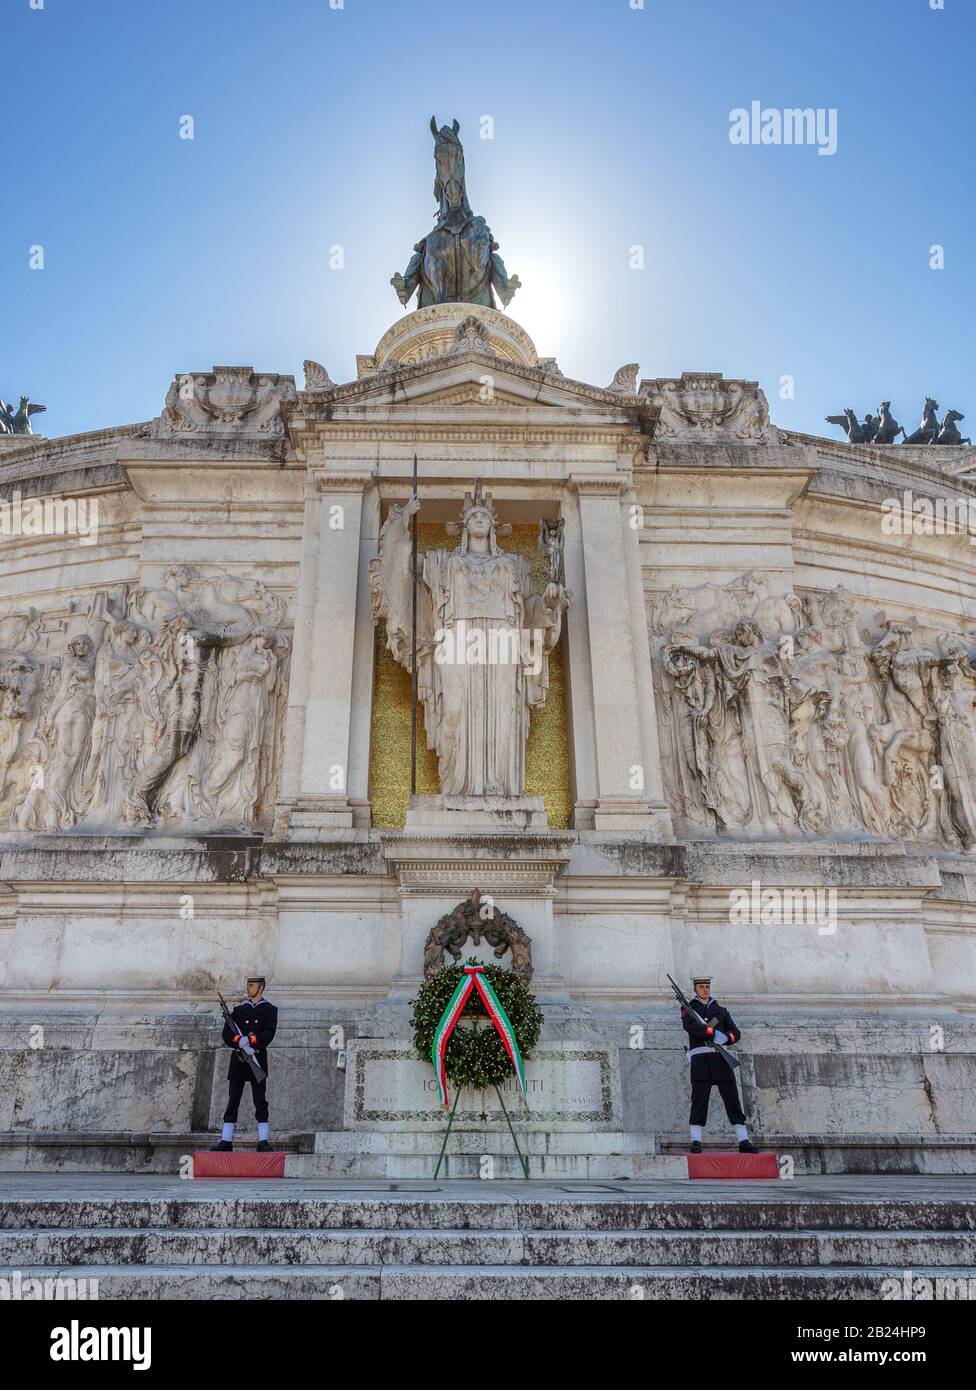 Roma, 14 marzo 2019 - Victoria Square, l'altare della Patria, una guardia di scorta dei soldati custodisce il monumento. Foto Stock